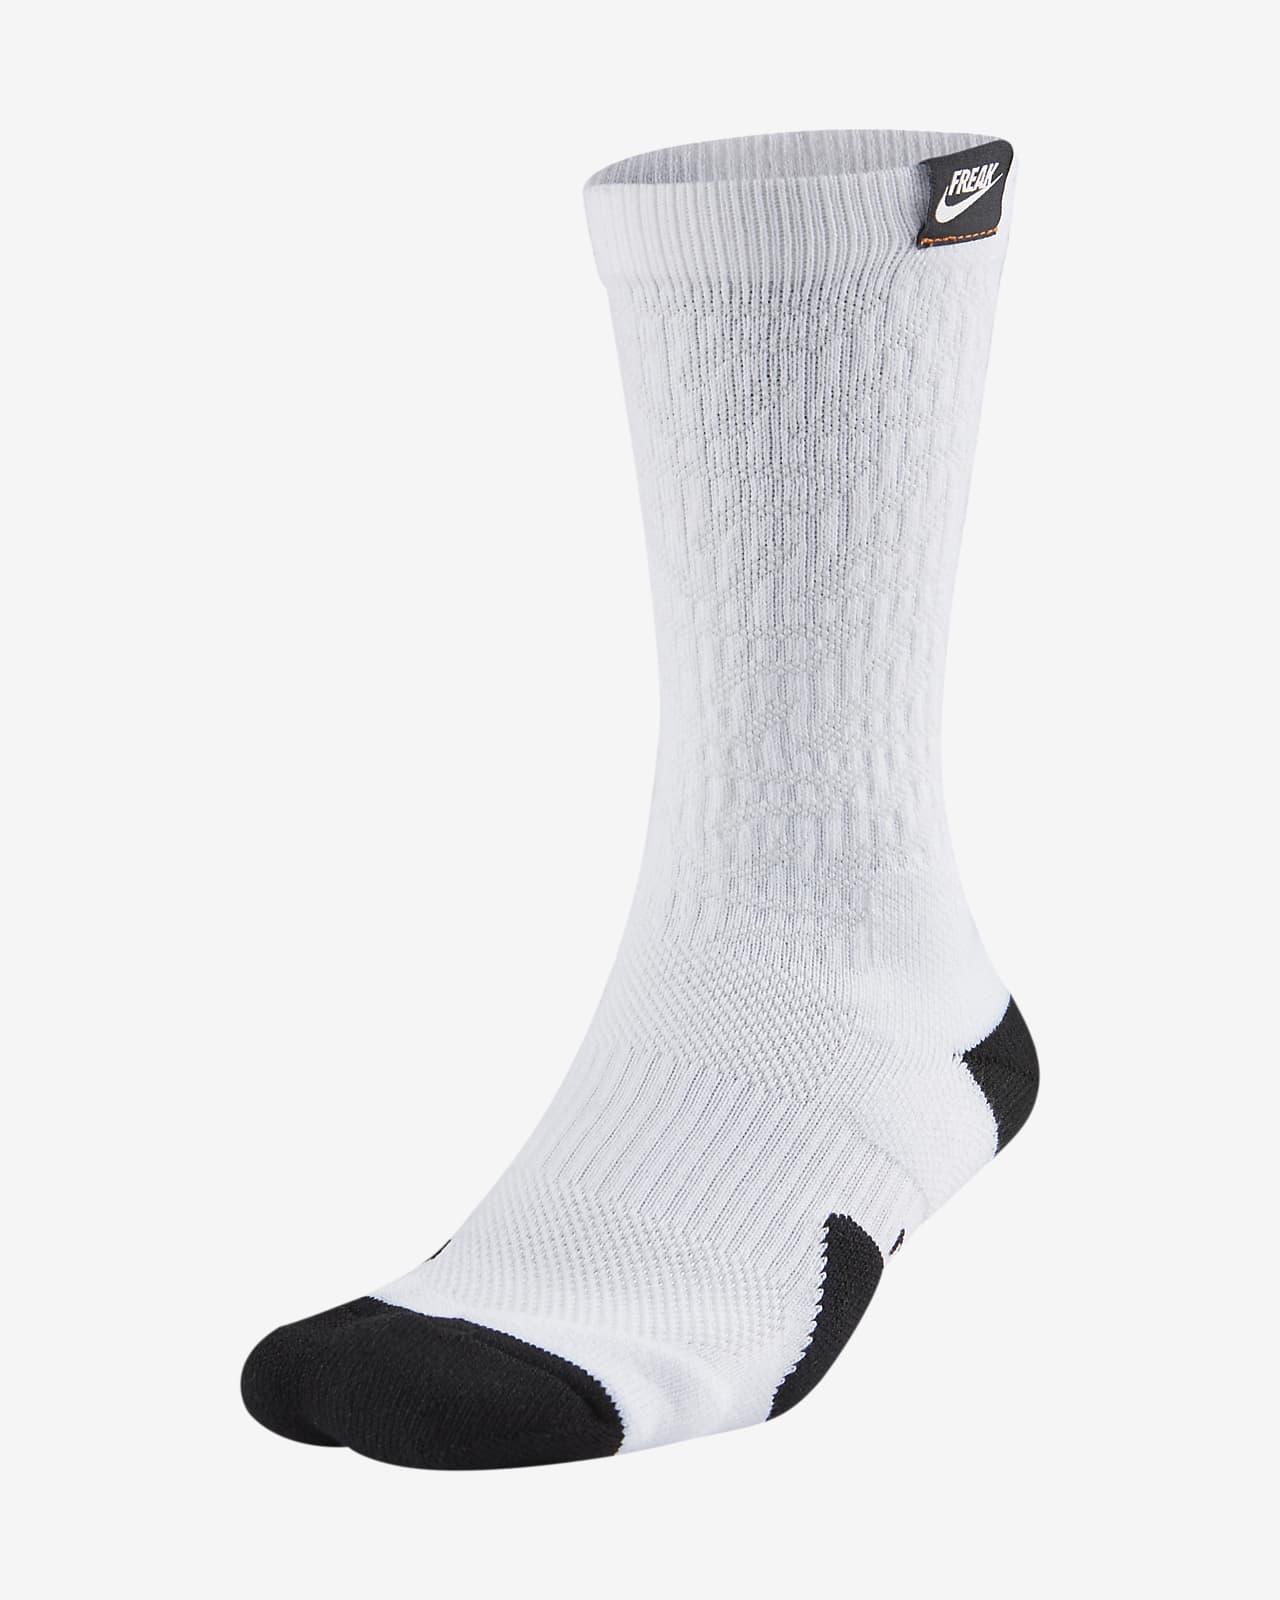 Giannis Nike Elite Basketball Crew Socks